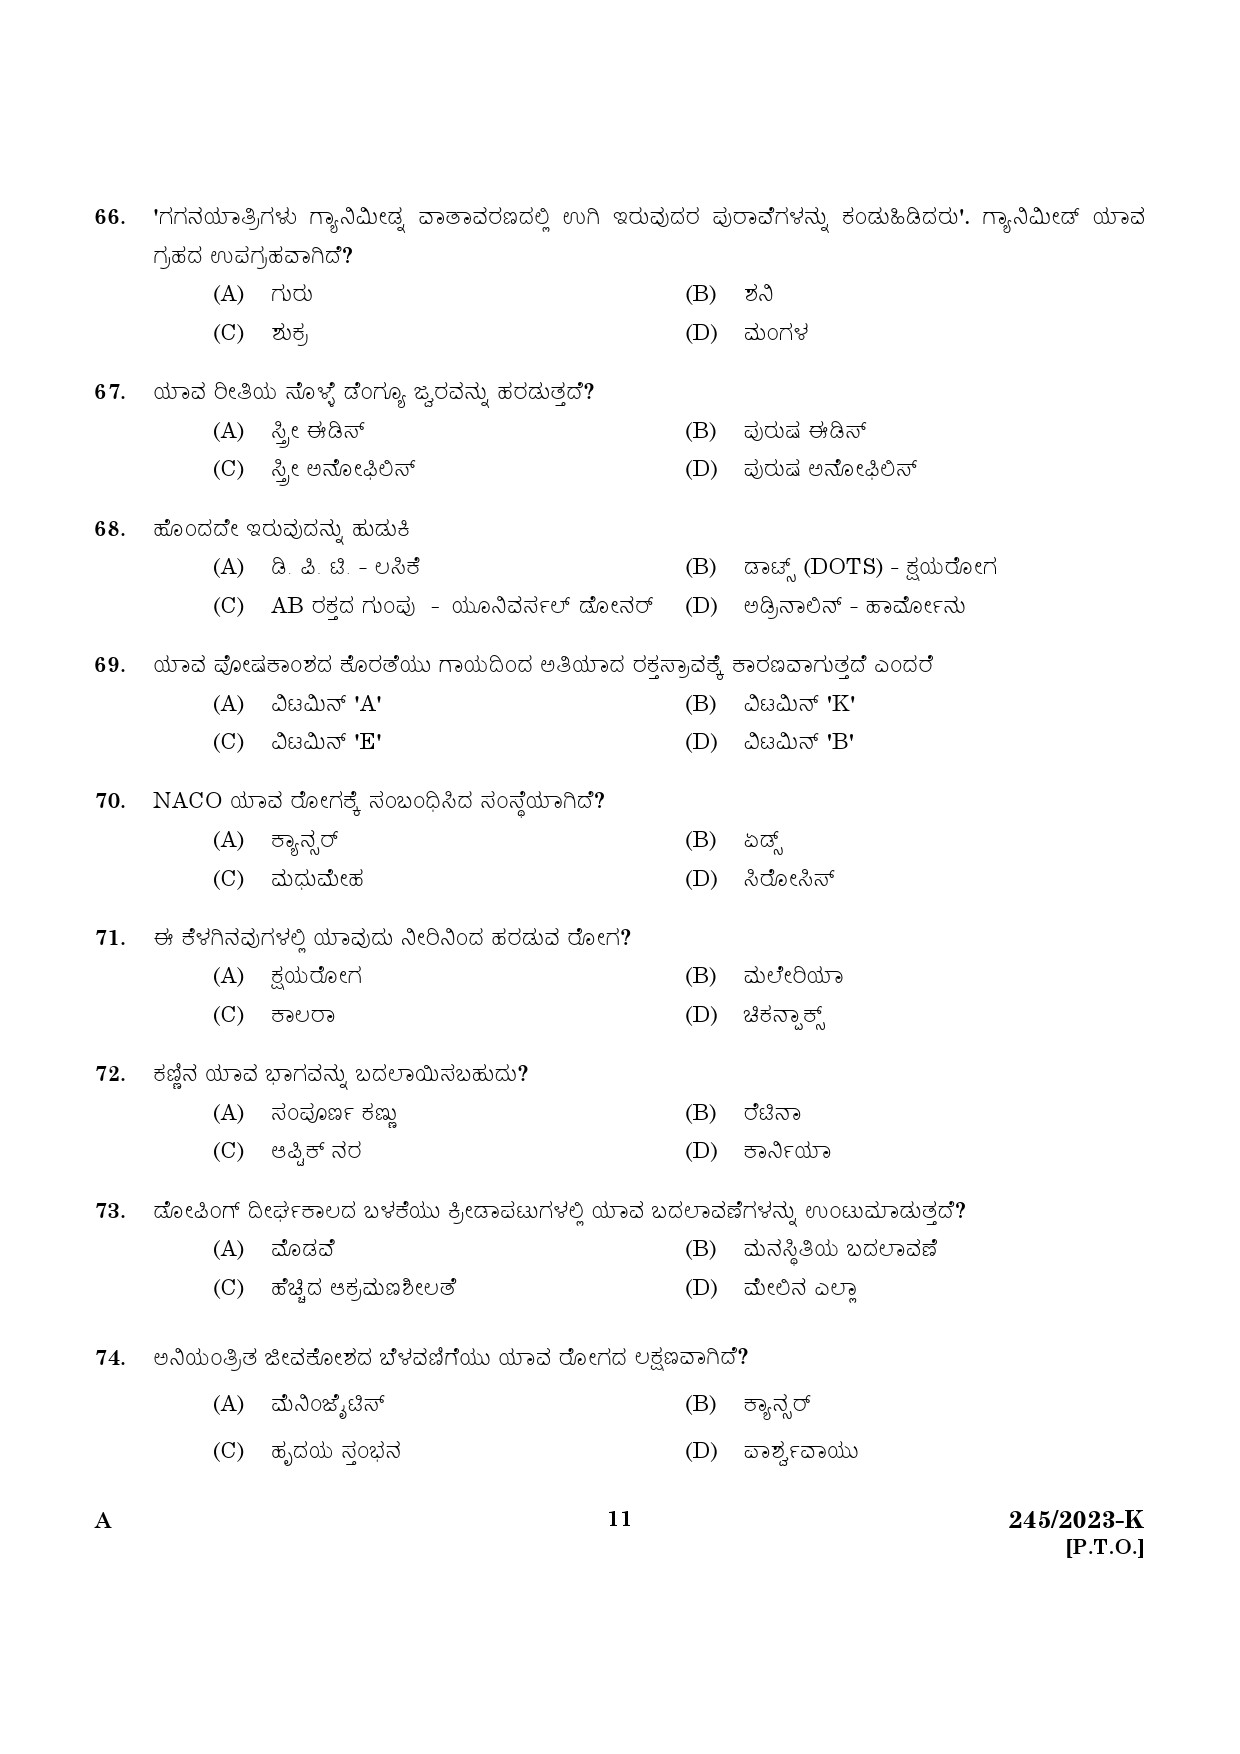 KPSC LGS Kannada Exam 2023 Code 2452023 K 9